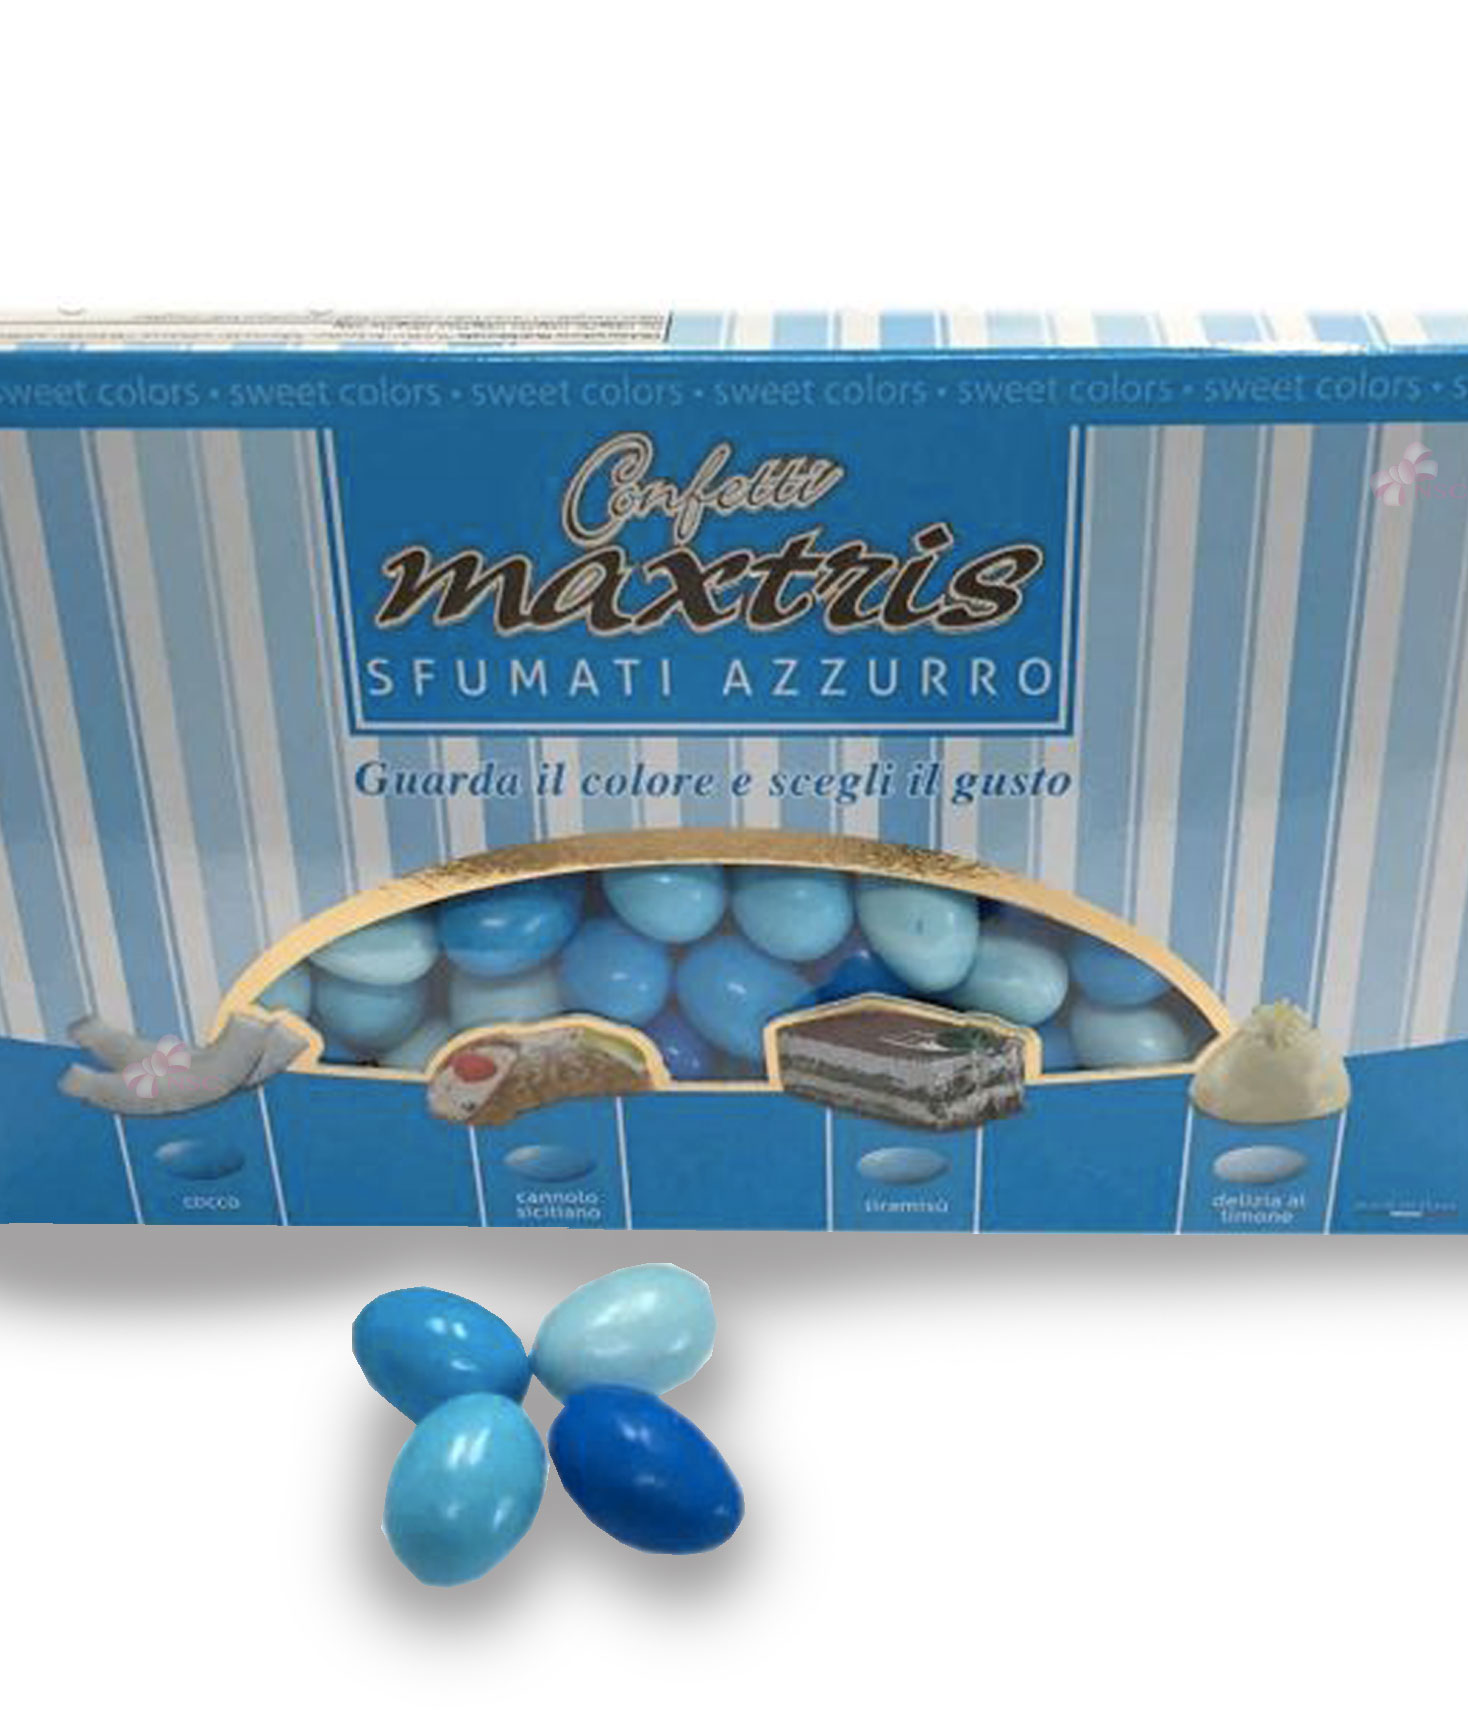 Confetti Maxtris cioconocciola Les Noisettes Sfumati Azzurro